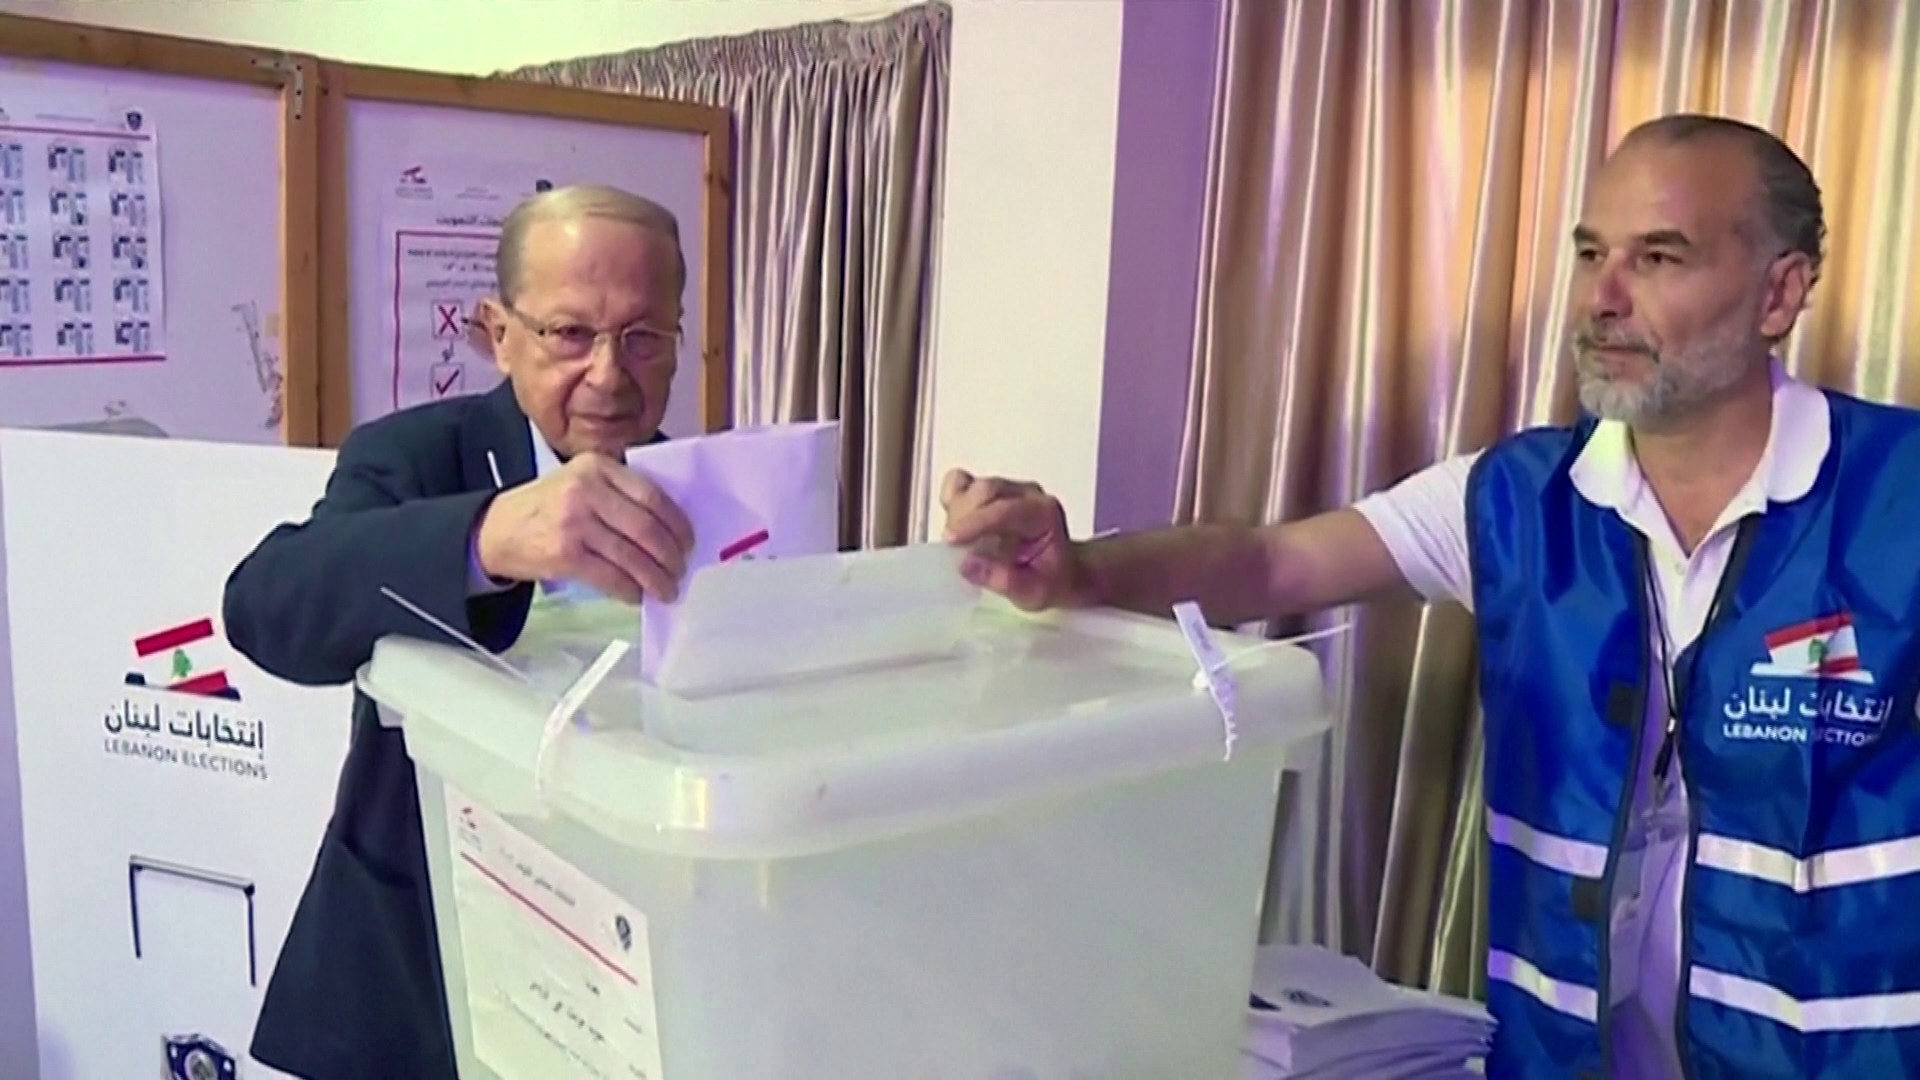 Parlamenti választás Libanonban magyar felügyelettel 